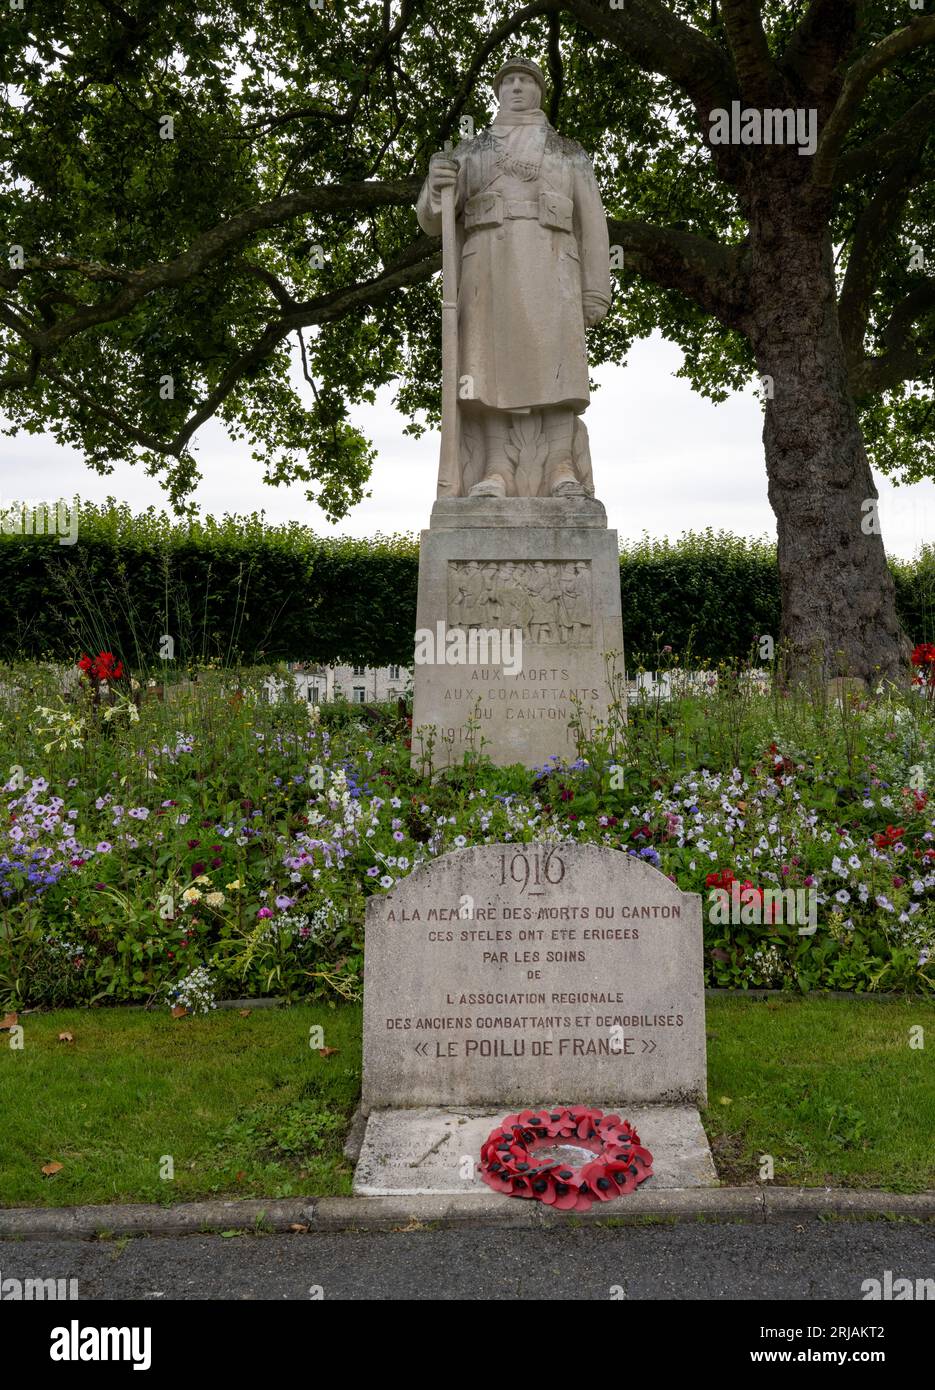 Monument aux combattants de la premiere guerre mondiale - first world war memorial -La Ferte-Sous-Jouarre, Seine-et-Marne, Ile-de-France, France, EU Stock Photo